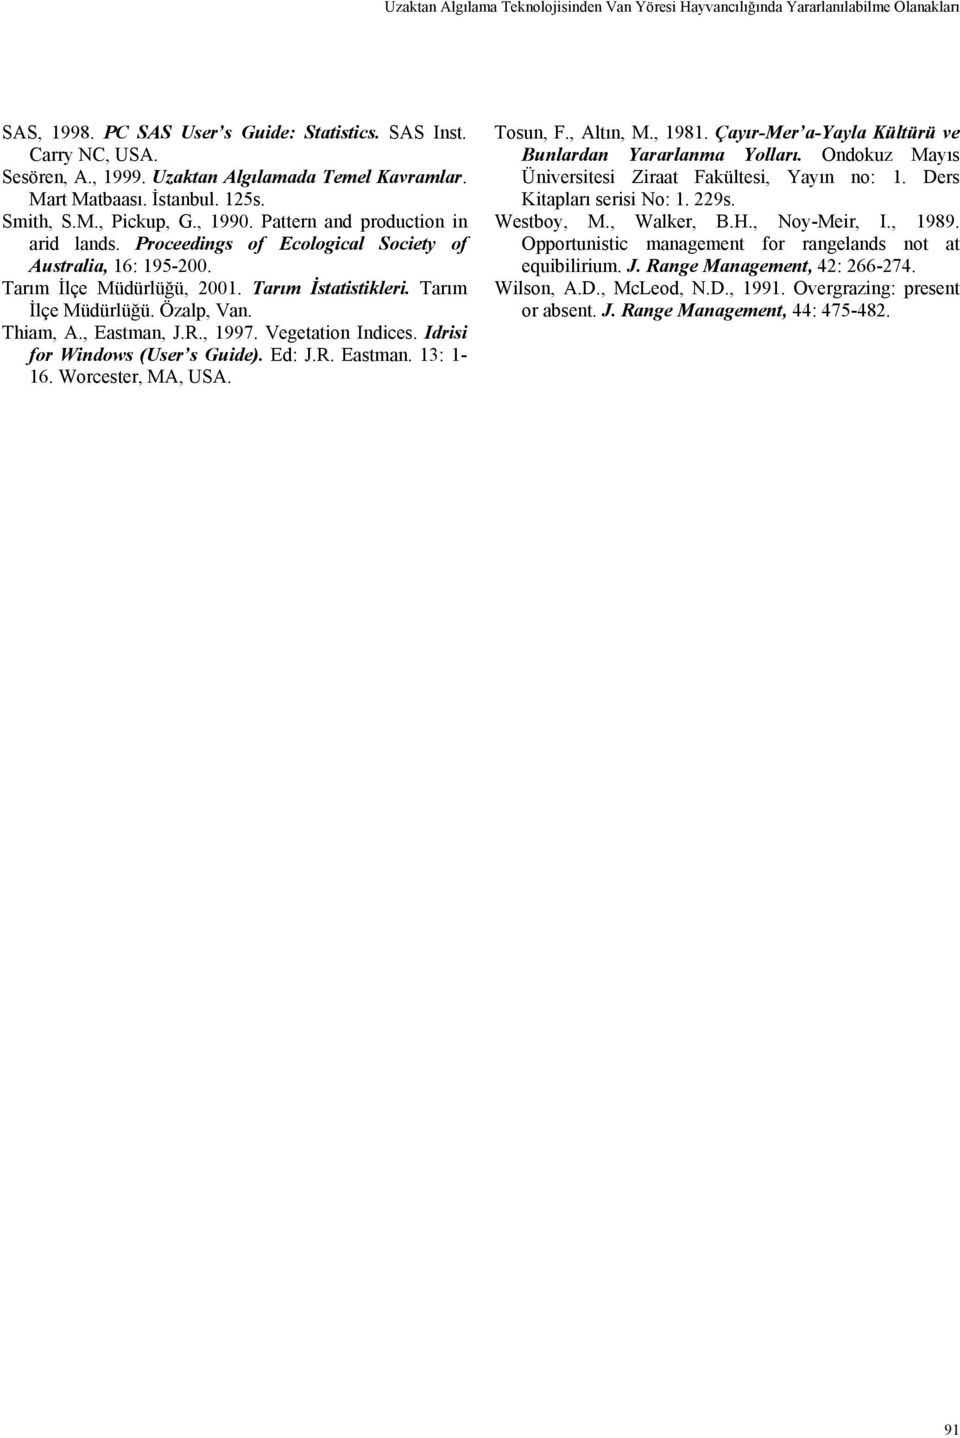 Tarım İlçe Müdürlüğü, 2001. Tarım İstatistikleri. Tarım İlçe Müdürlüğü. Özalp, Van. Thiam, A., Eastman, J.R., 1997. Vegetation Indices. Idrisi for Windows (User s Guide). Ed: J.R. Eastman. 13: 1-16.